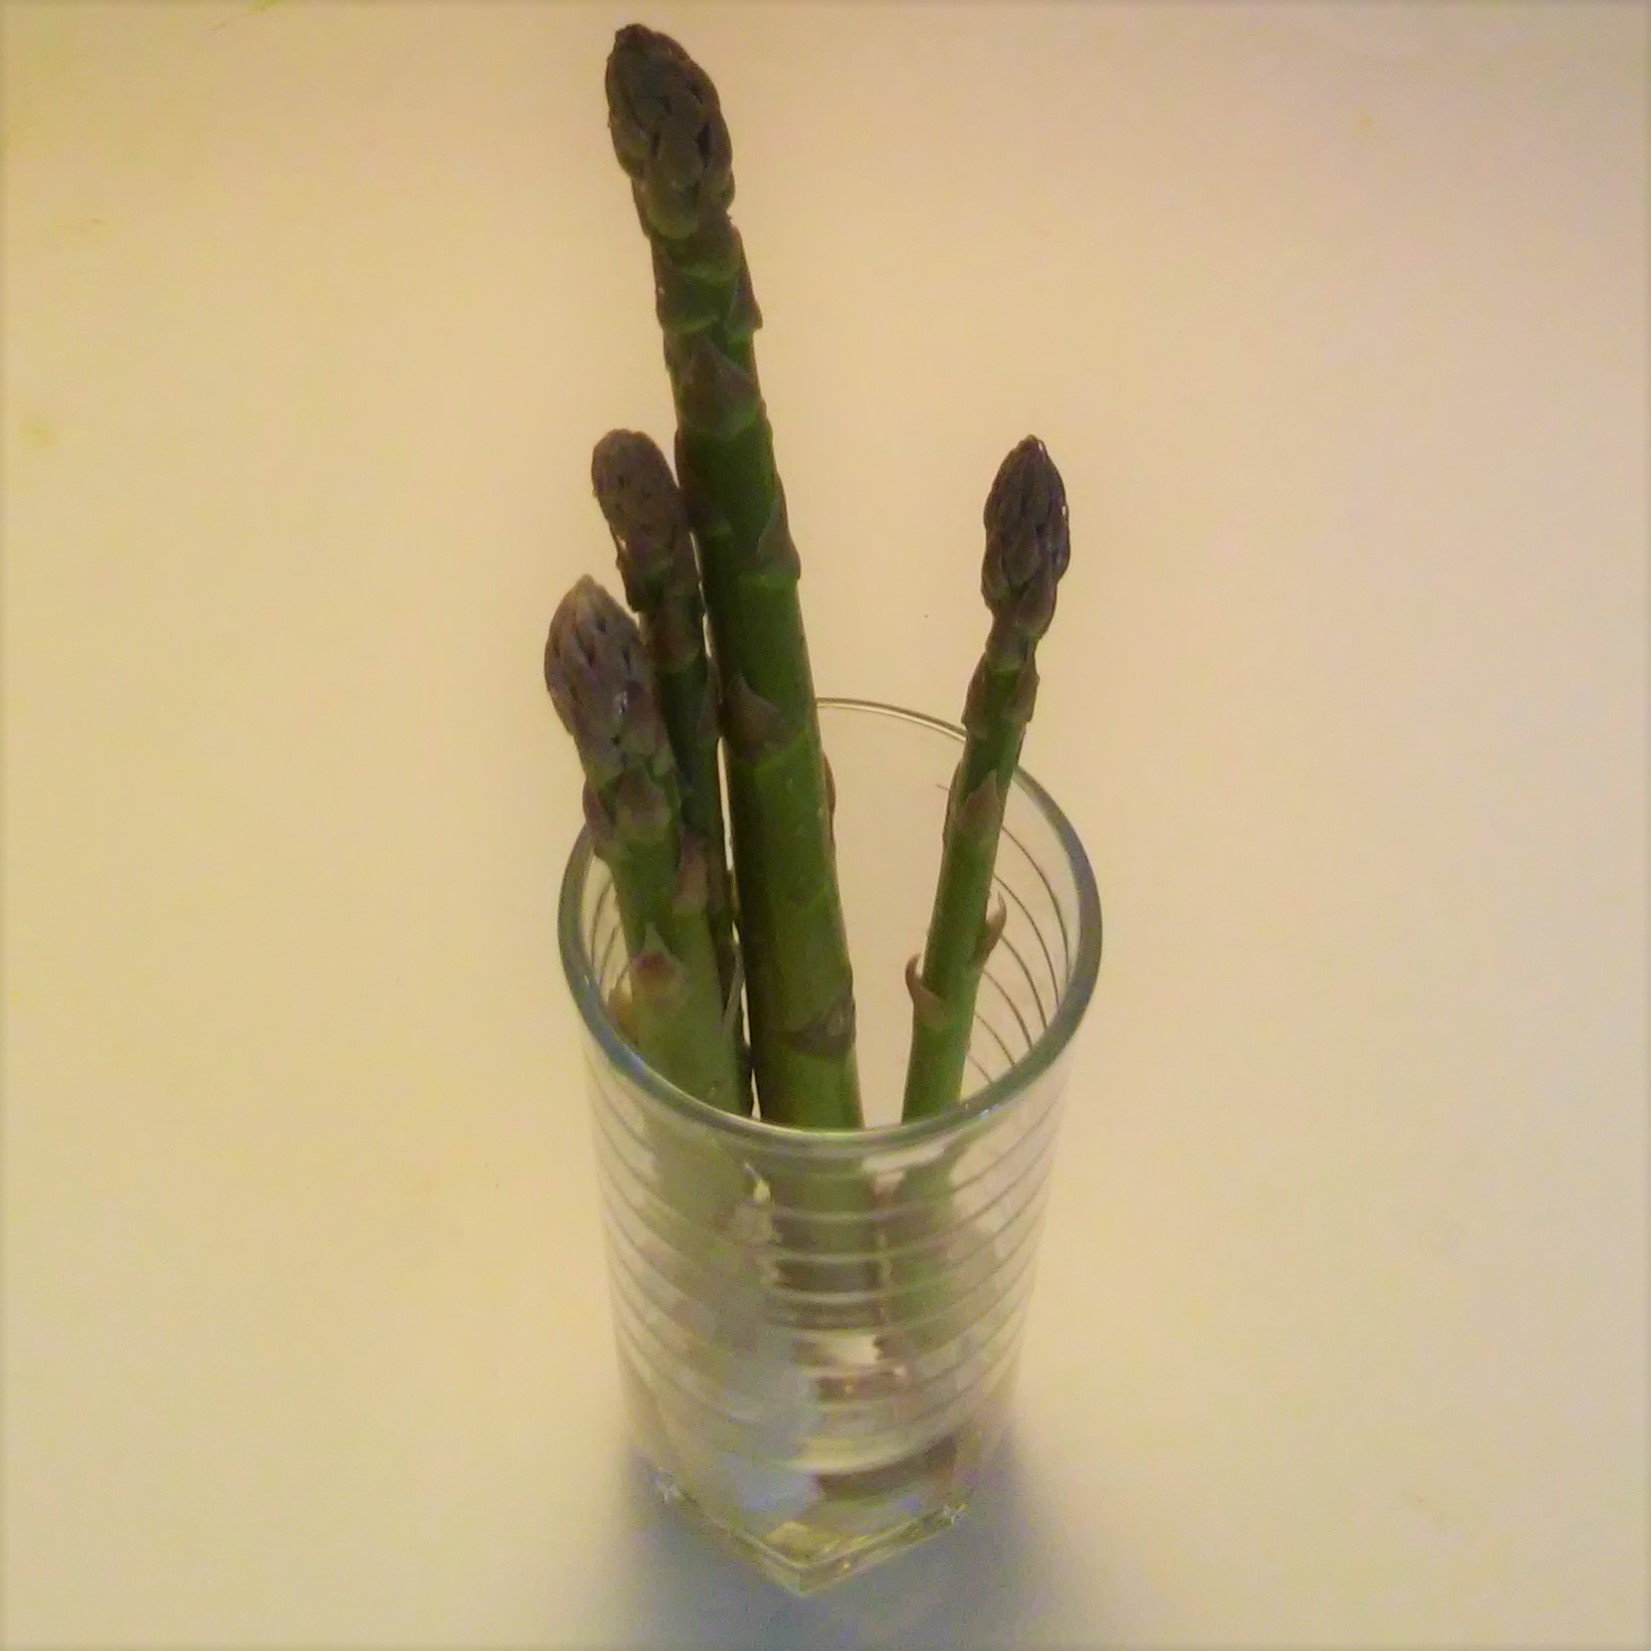 saving asparagus